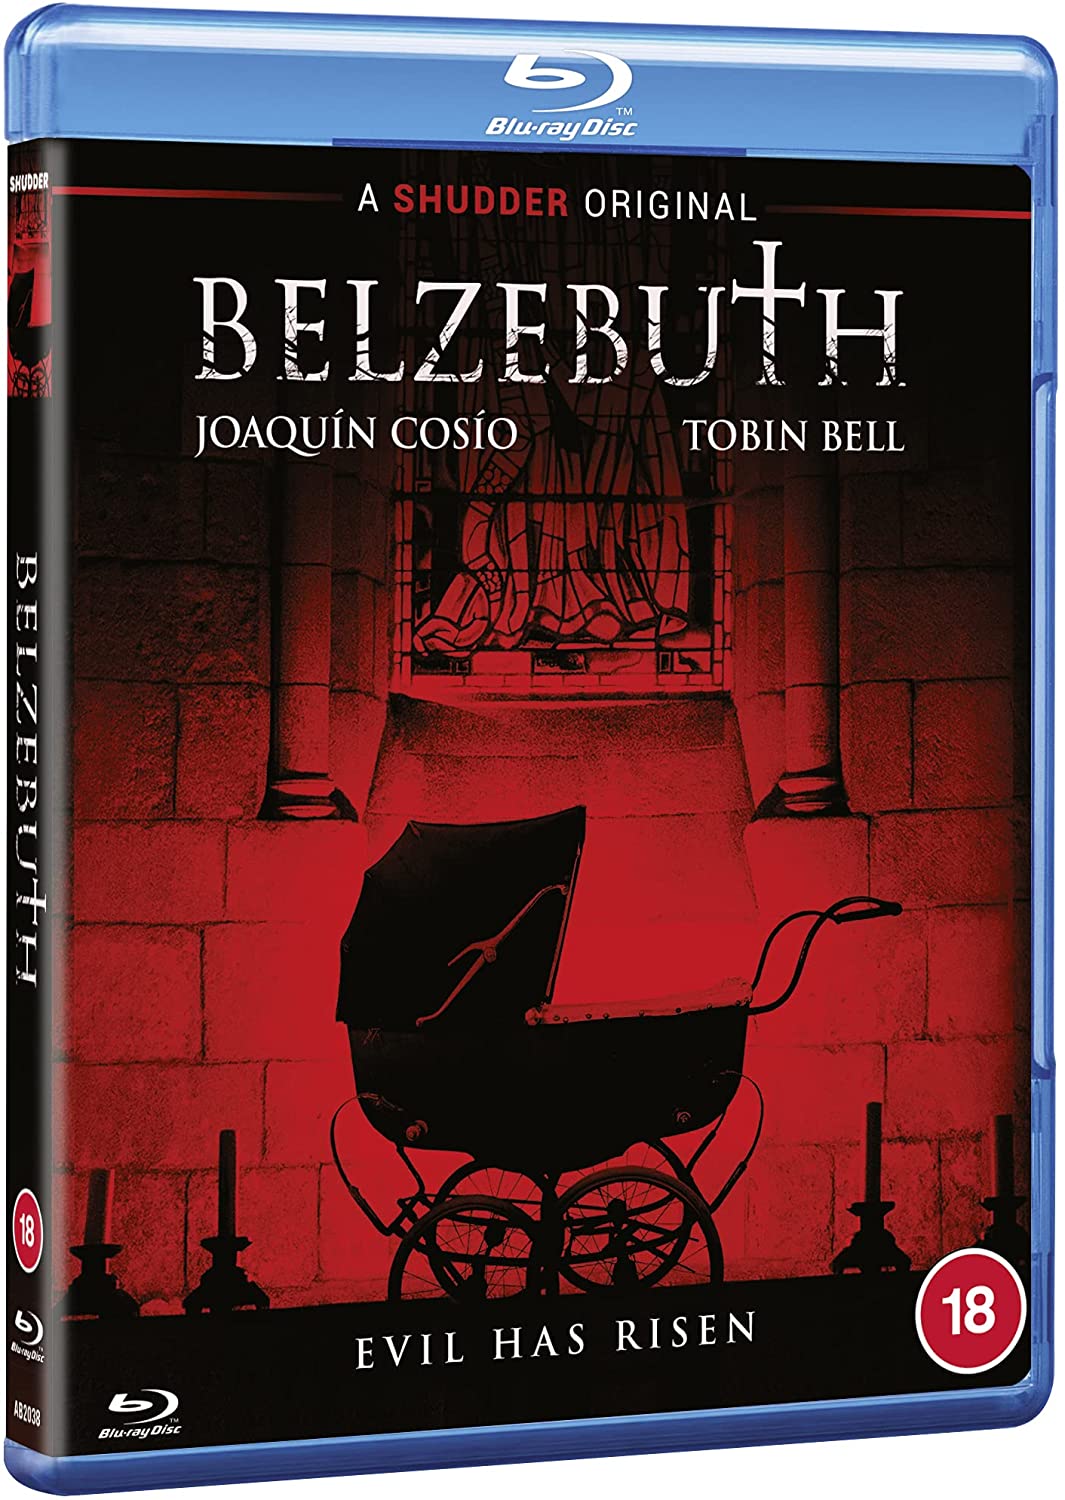 Belzebuth (SHUDDER) [2017] - Horror [Blu-ray]